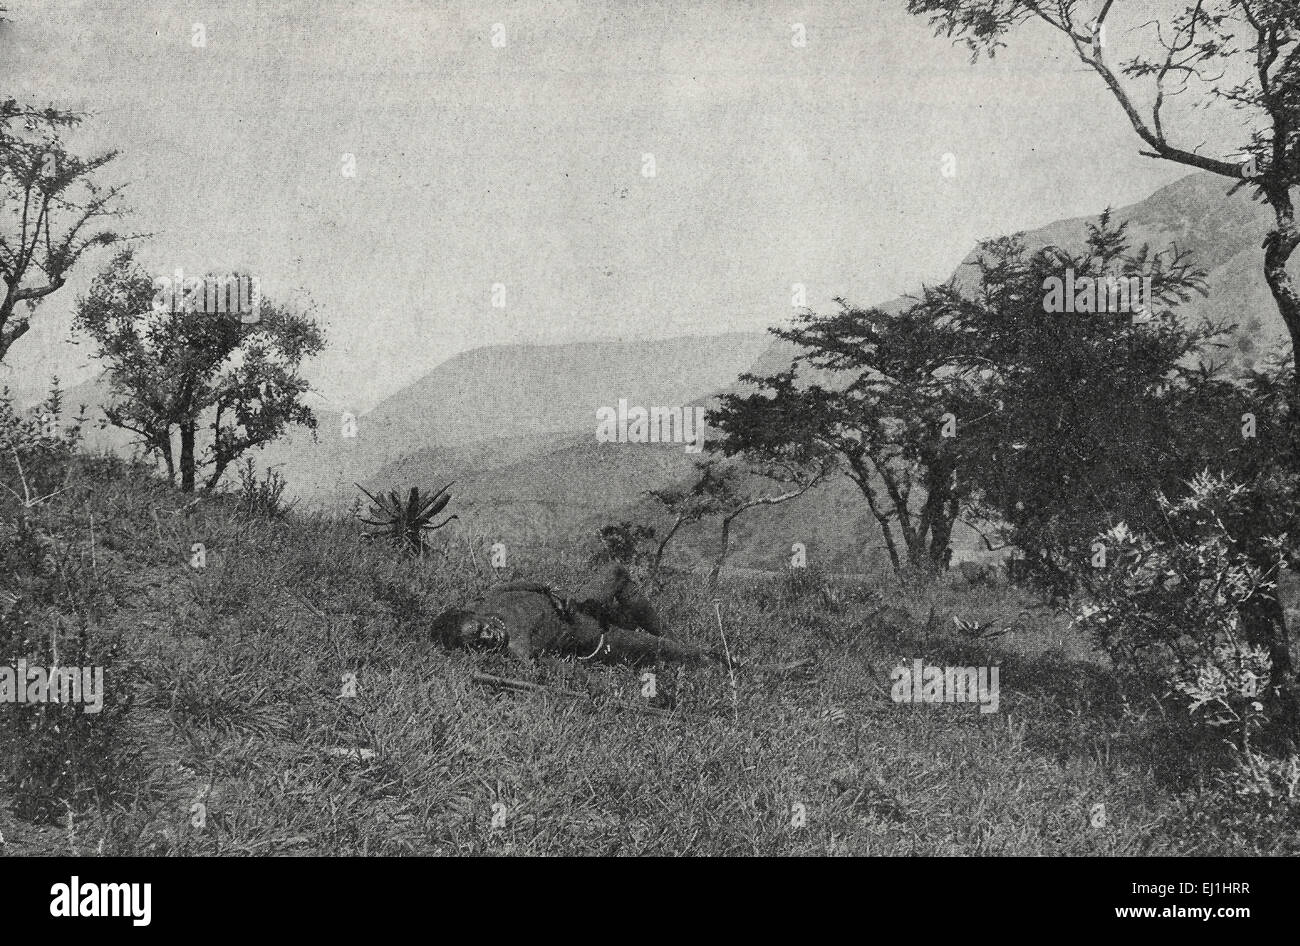 Warten auf die Geier - Native Krieger liegend tot und Unbegrabene Gras - Südafrika - ca. 1895 Stockfoto